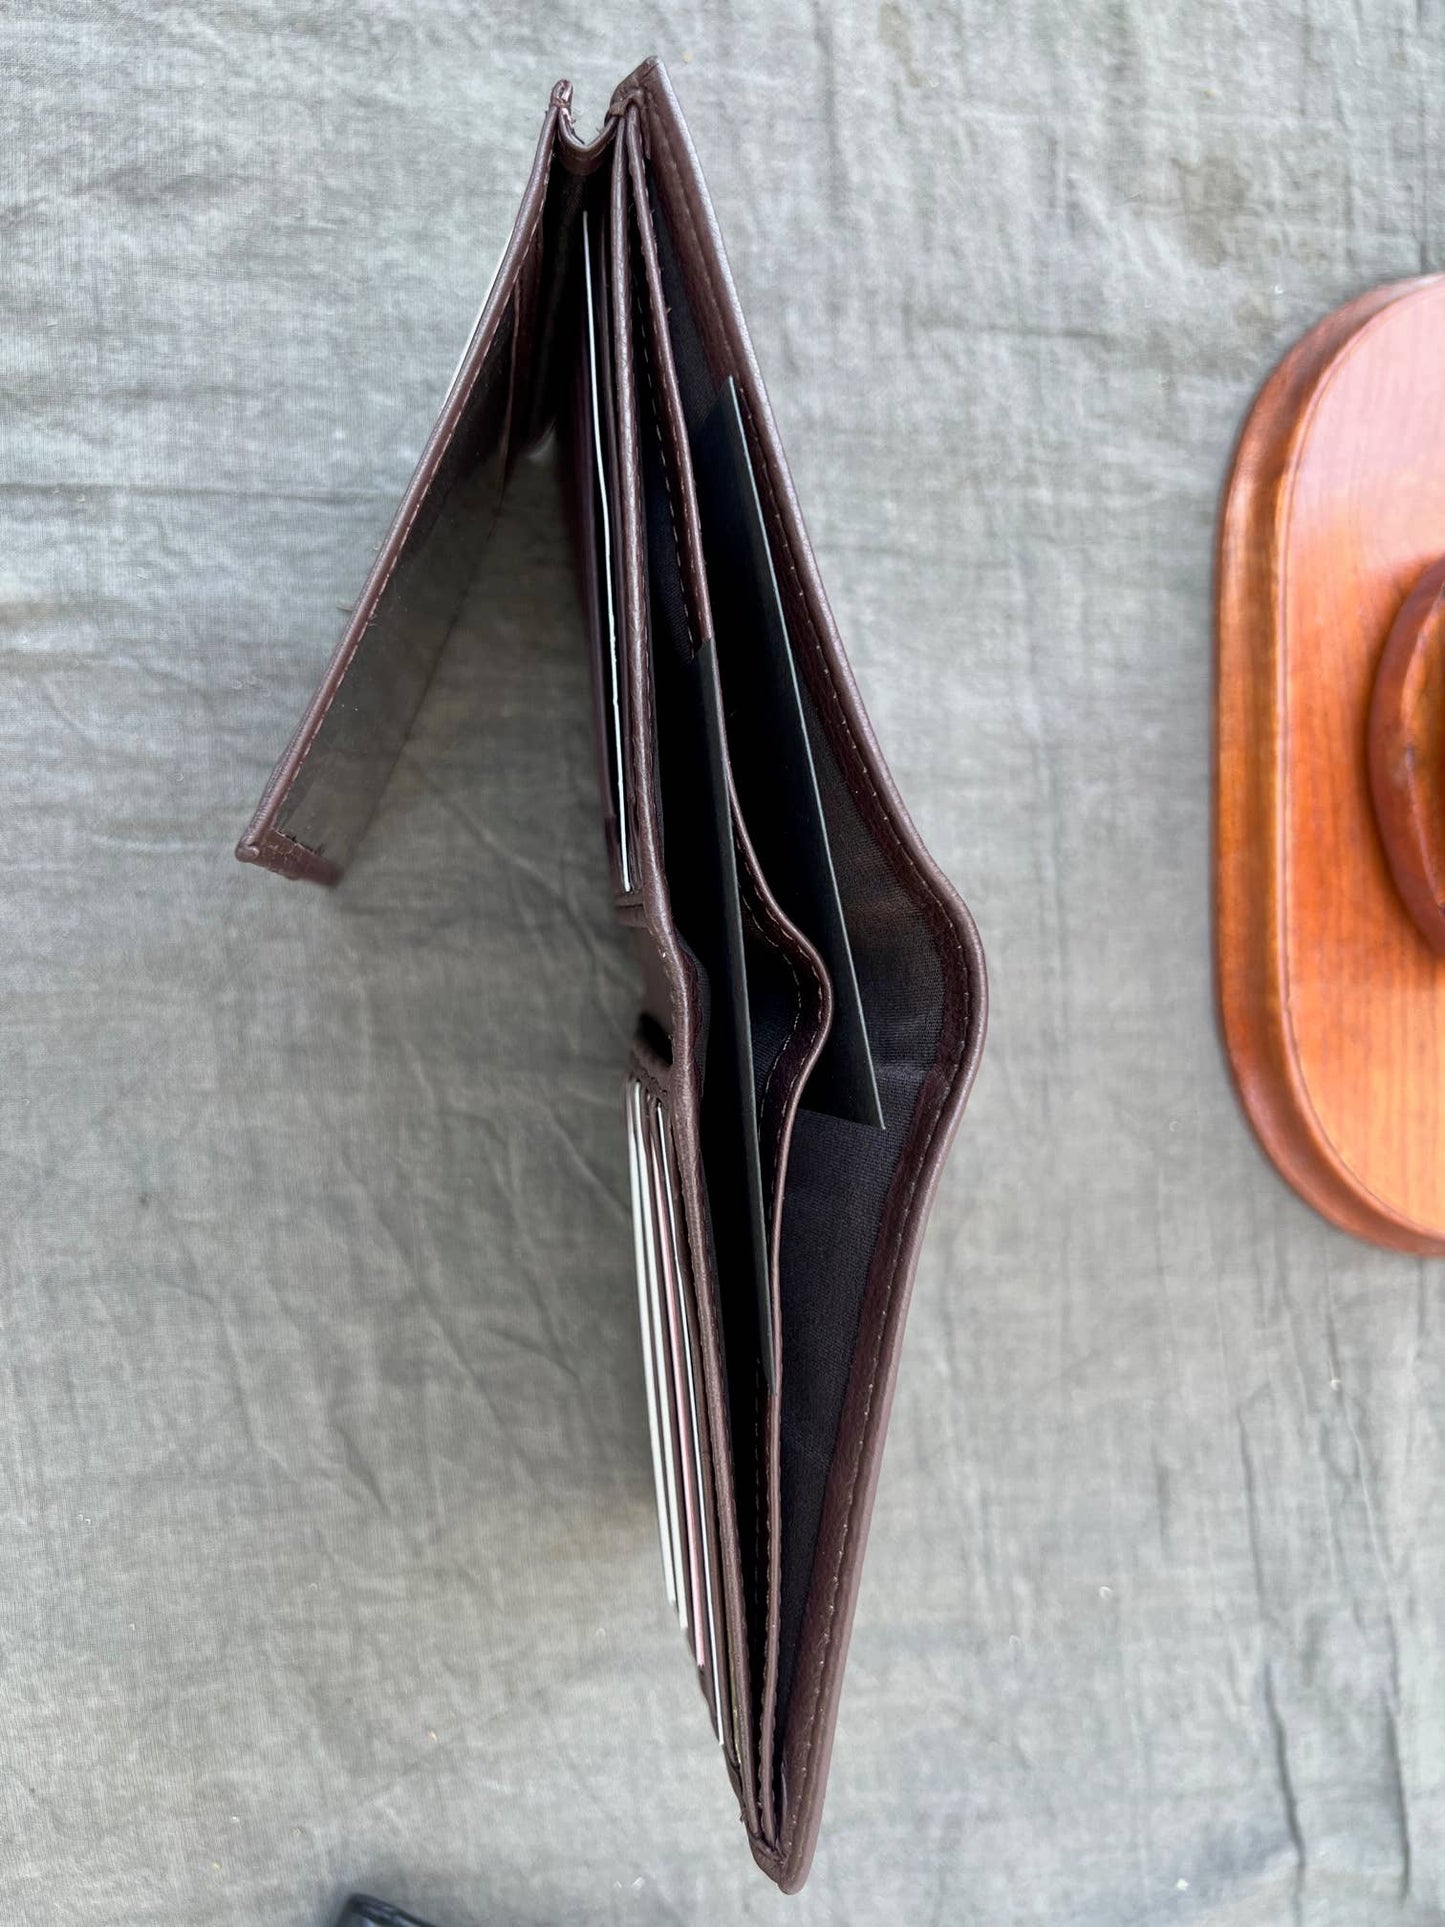 Cowhide/Buffalo Leather Bi-Fold RFID Wallet